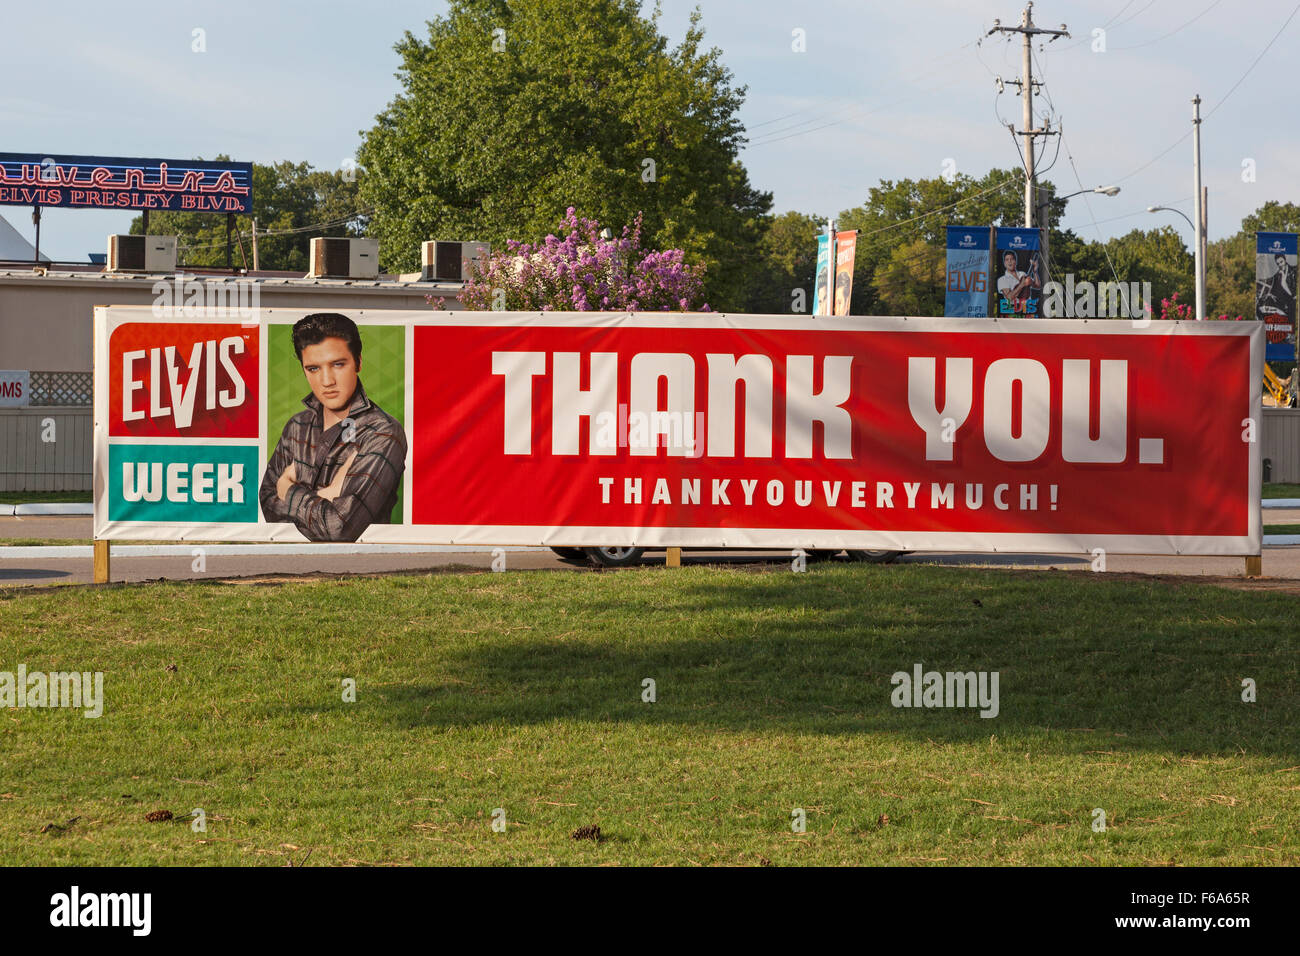 Merci beaucoup, la semaine 2015 Elvis Graceland, Memphis, Tennessee Banque D'Images